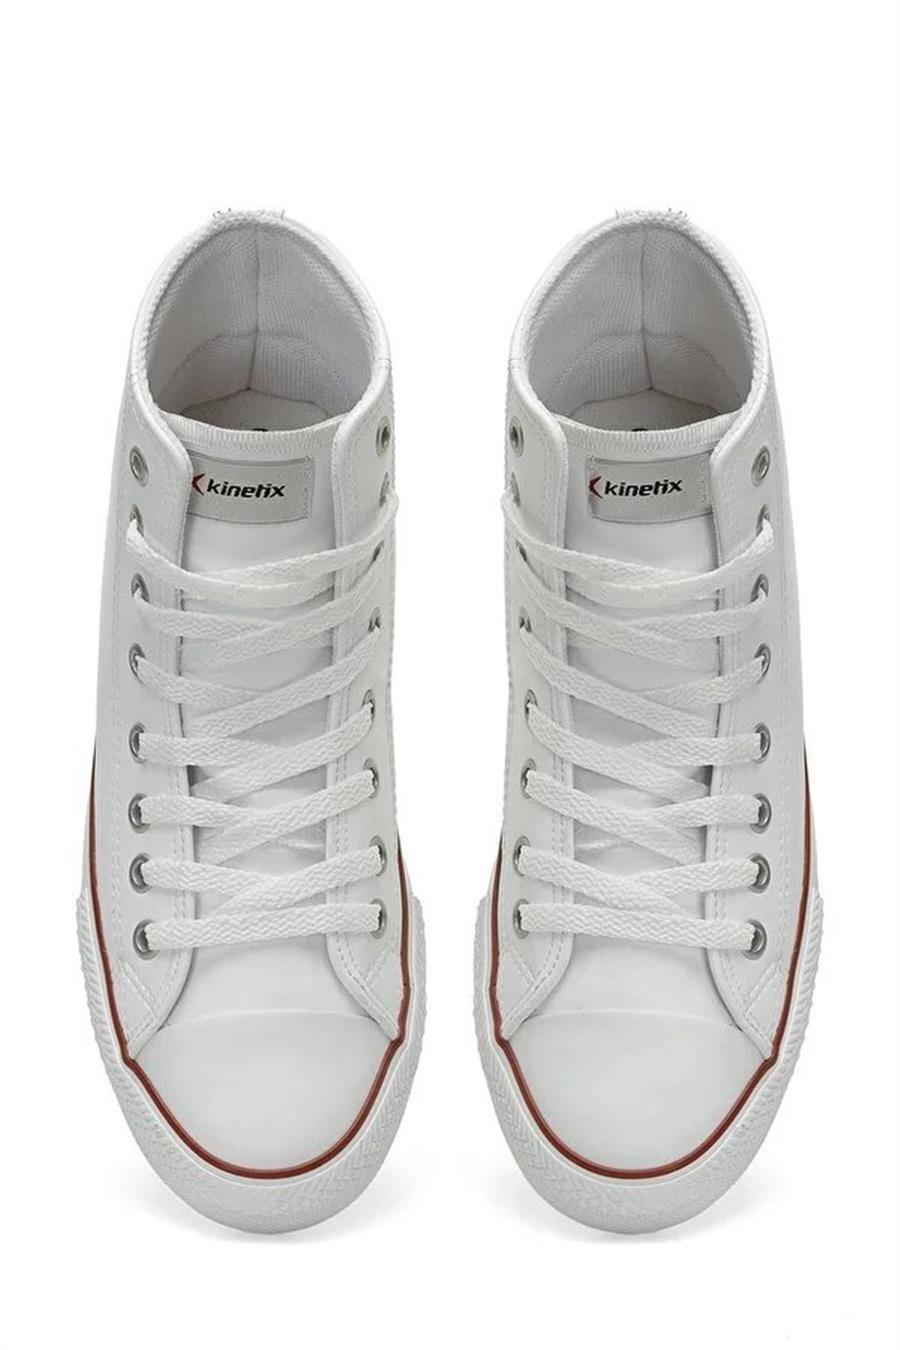 Kinetix Fowler Pu Hı 3Pr Beyaz Erkek Sneaker Hı Ayakkabı